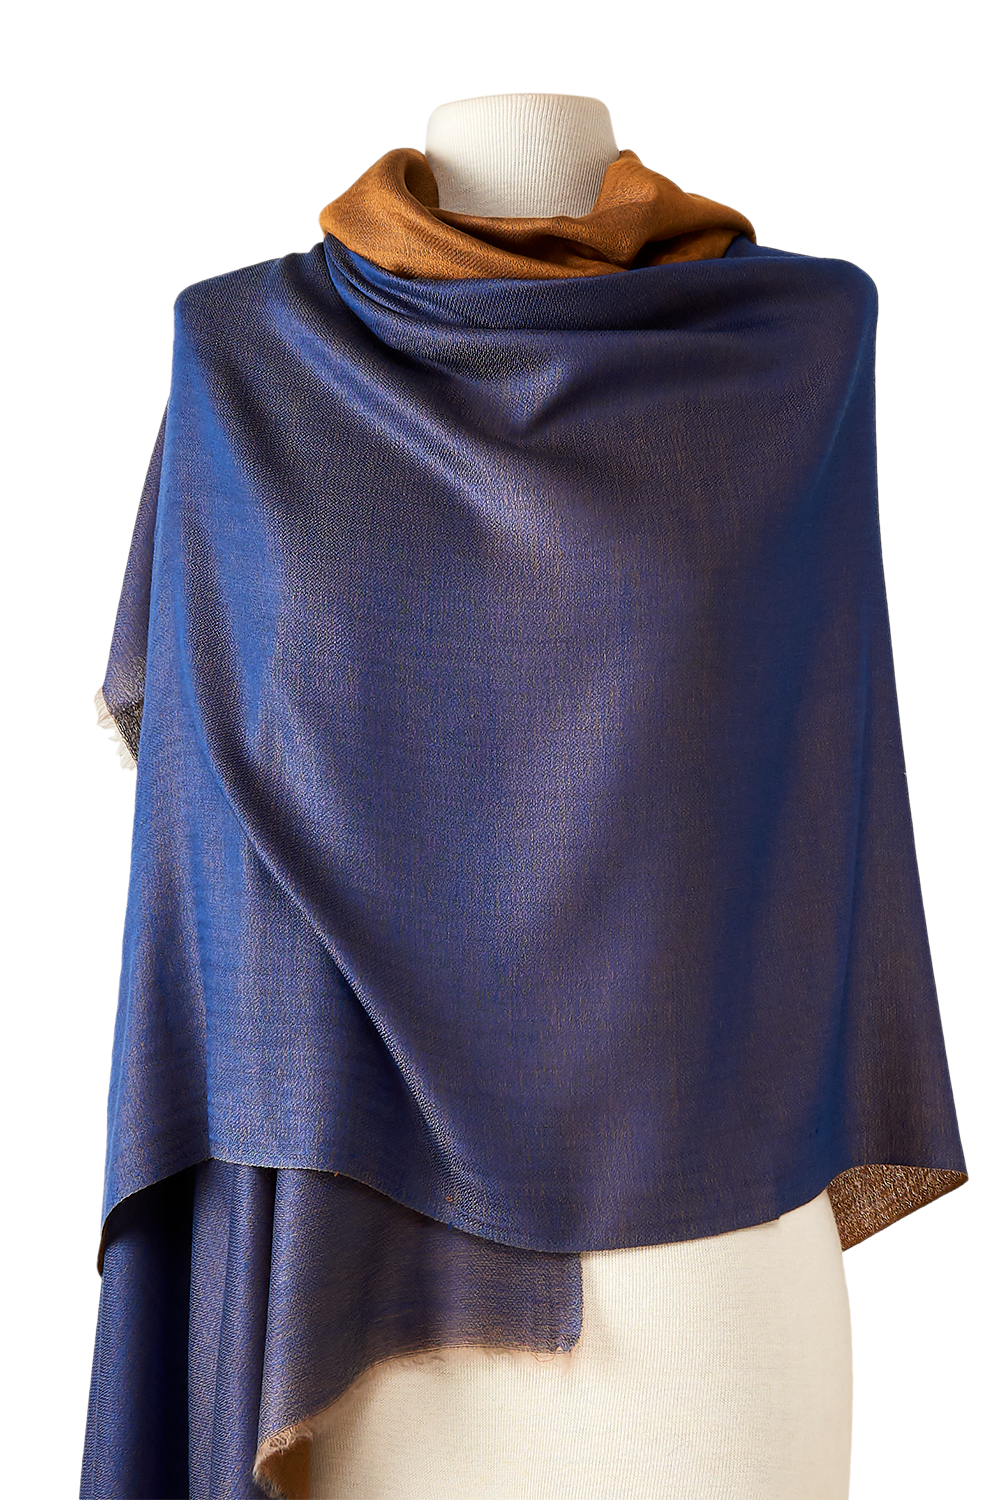 pashmina de puro cashmere verdadeiro premium dupla face dourada e azul 100x210cm para festas, casamentos, frio e alto inverno